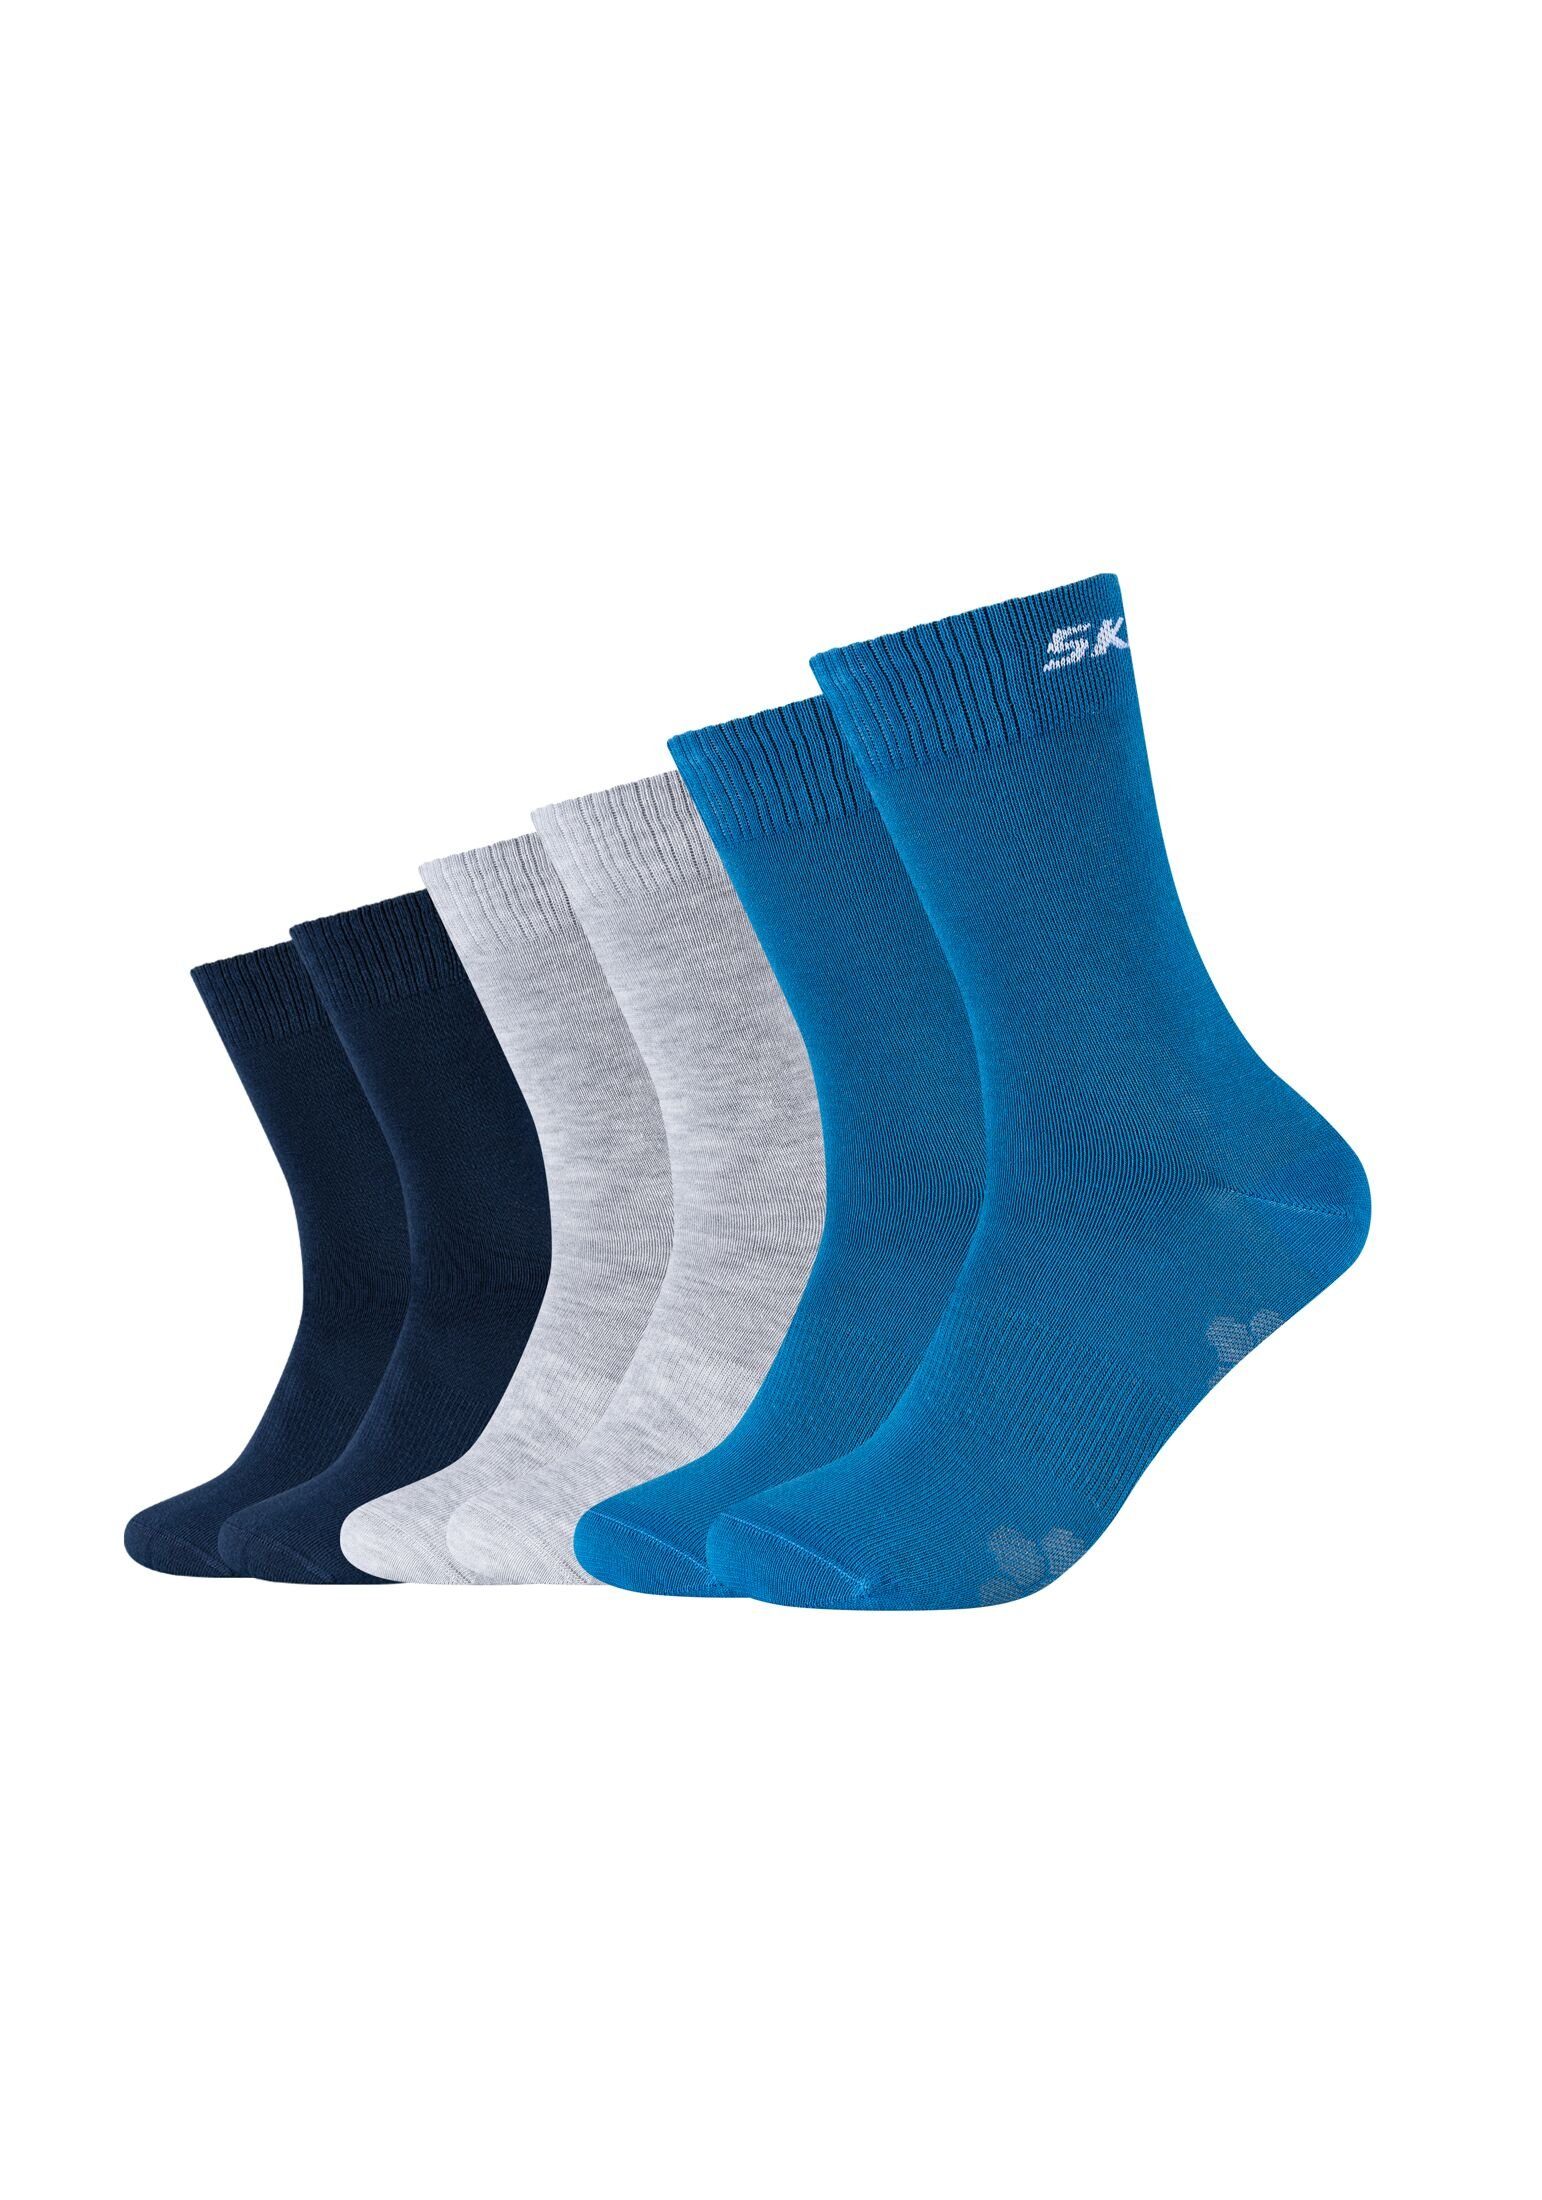 Skechers 6er Pack Socken vallarta Socken blue